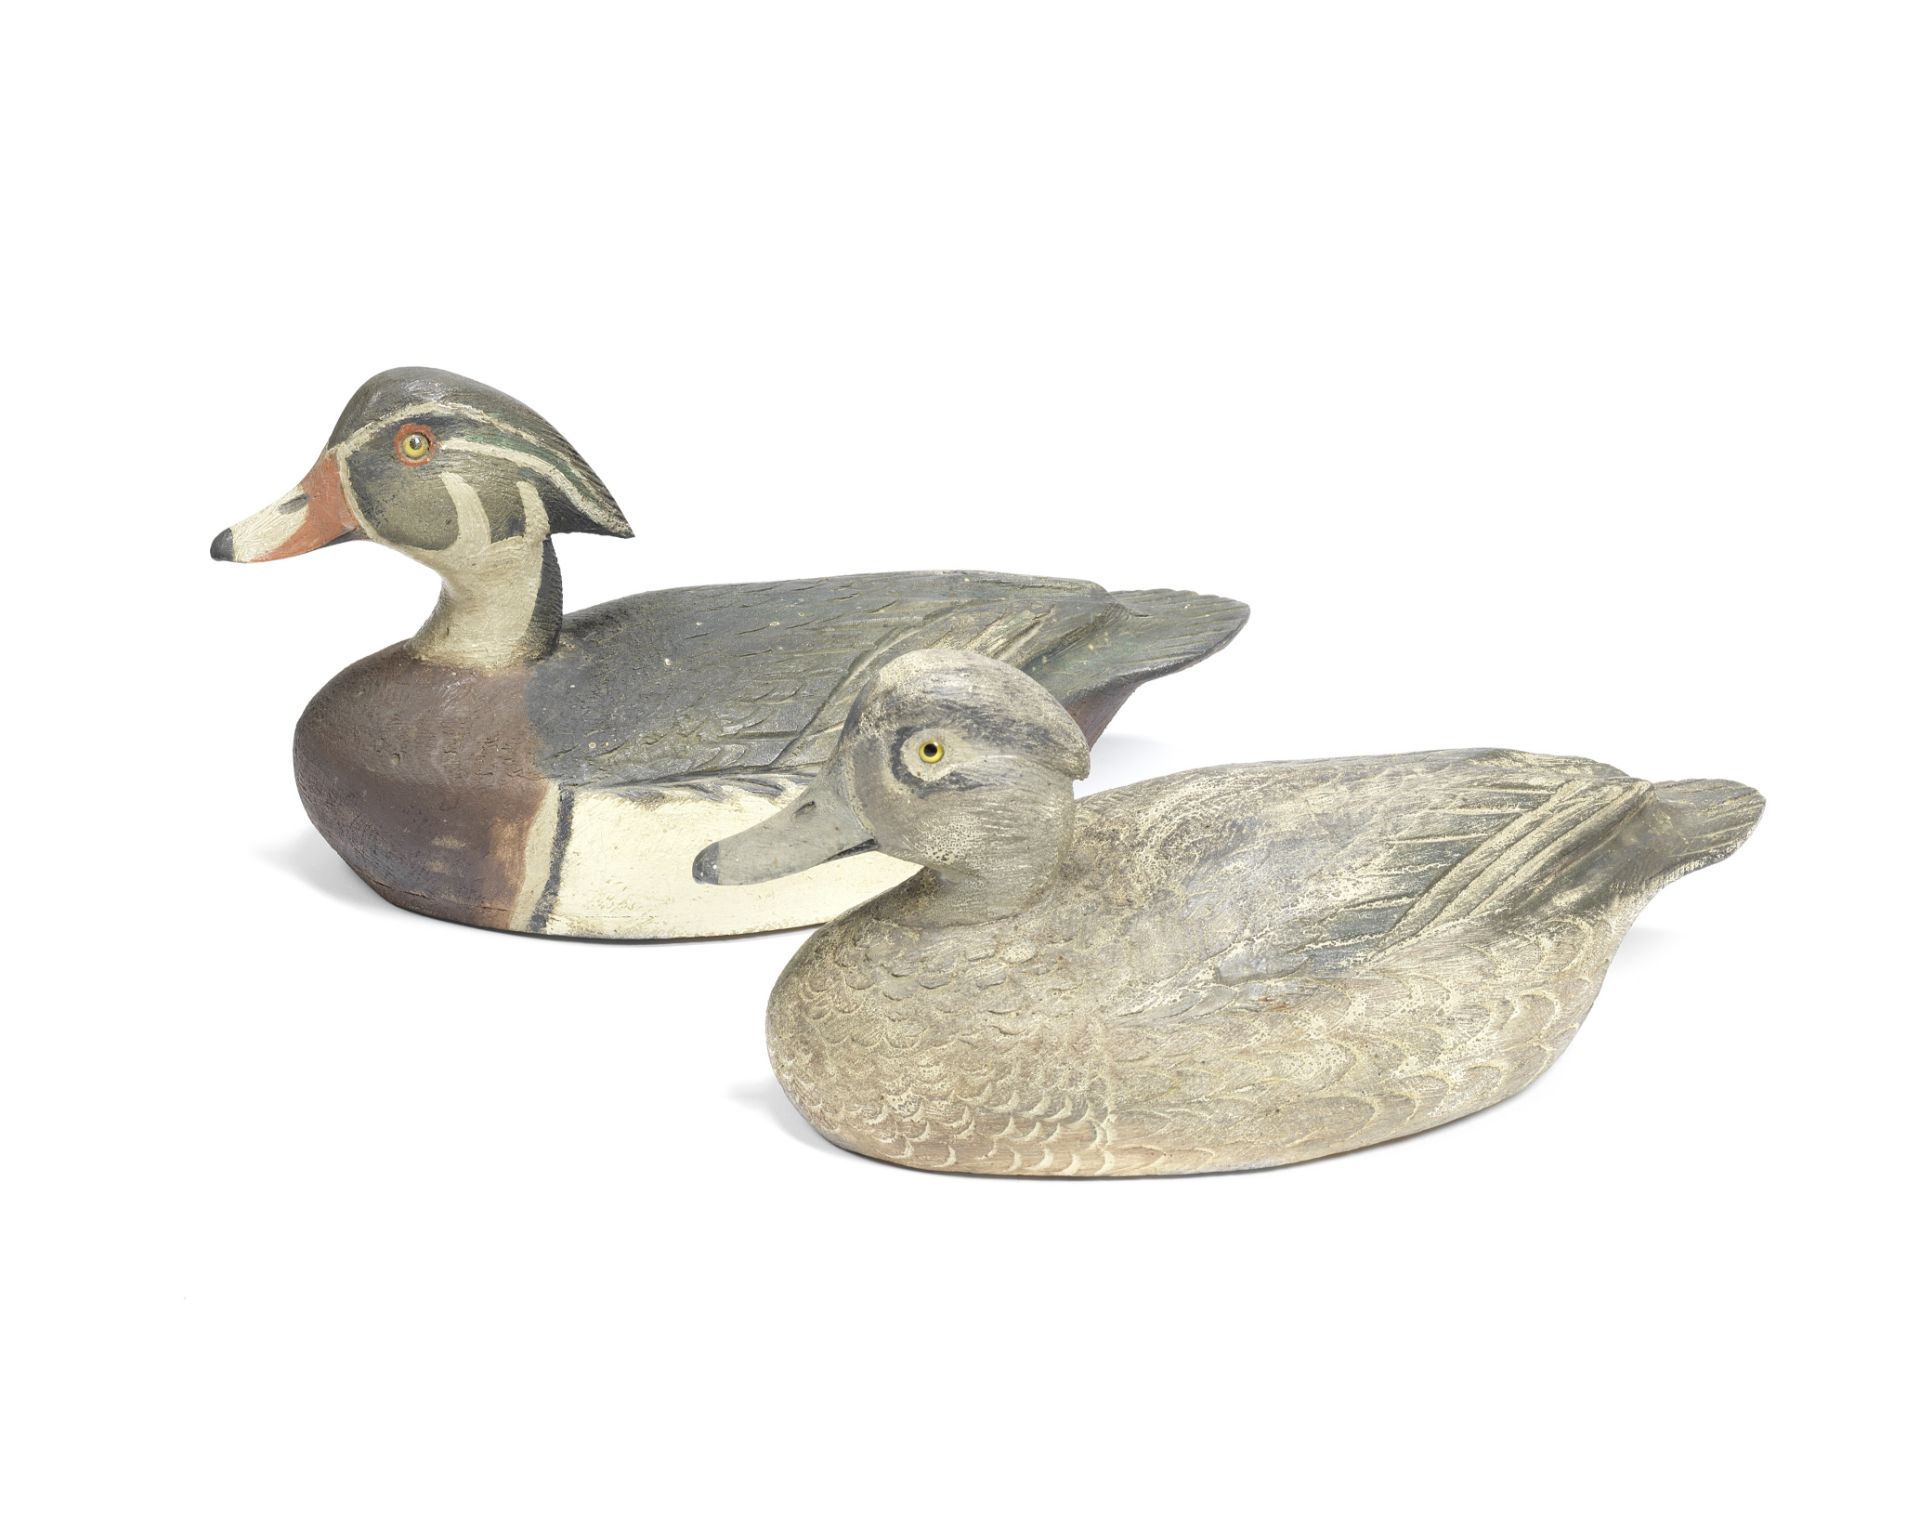 A fine pair of wooden Carolina duck decoys by Ben Schmidt